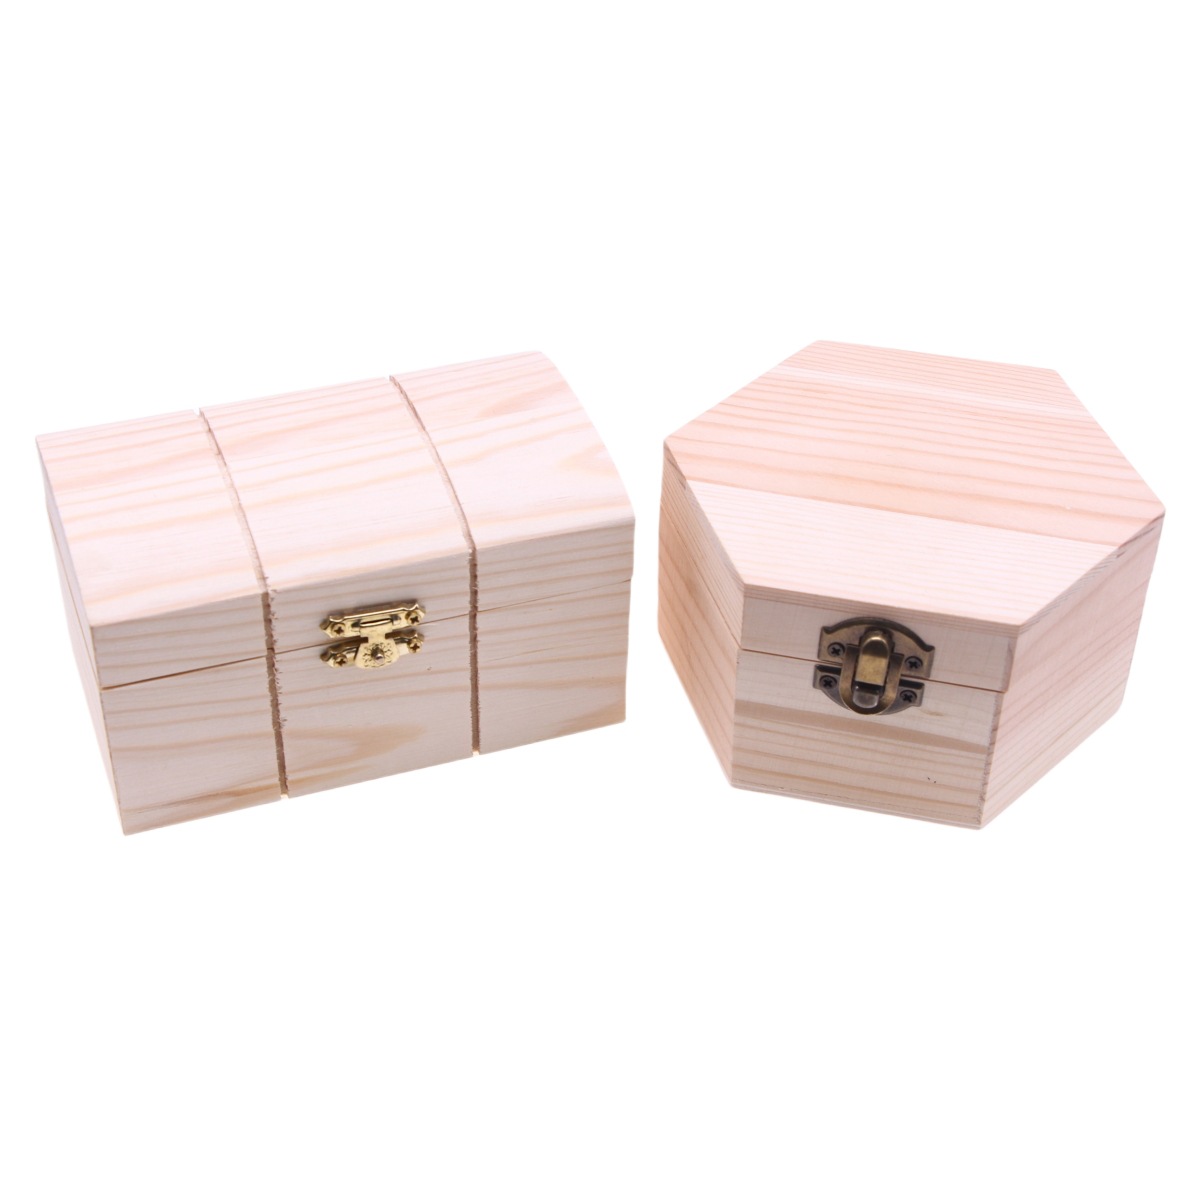 木製    収納ケース     収納ボックス      小物入れ      アクセサリーケース     ギフトボックス   2種